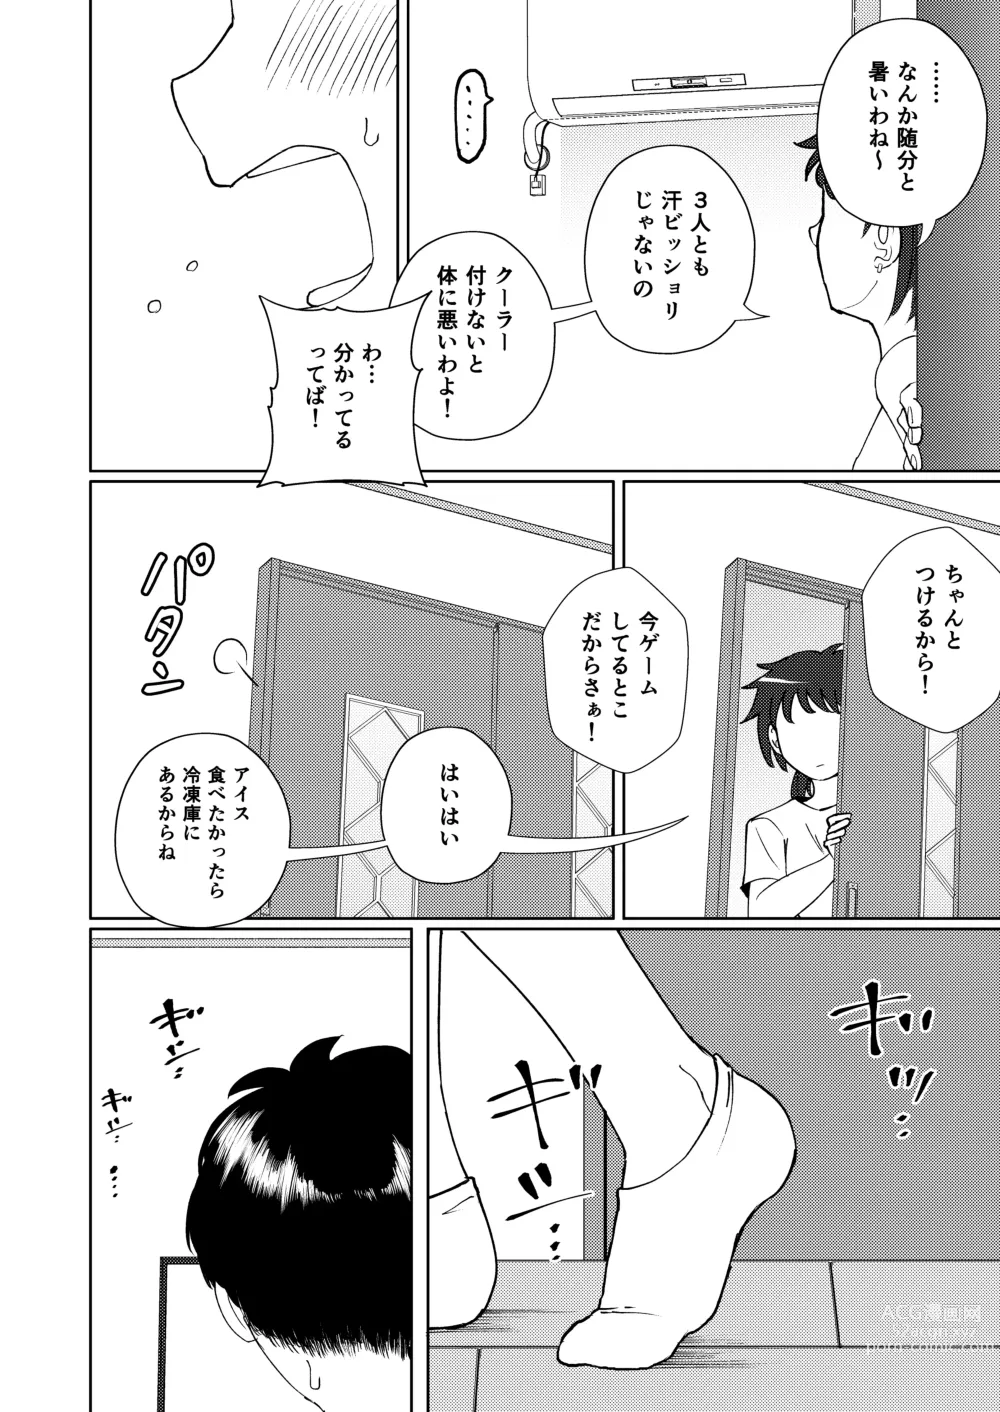 Page 34 of doujinshi Shoujiki Iu to,